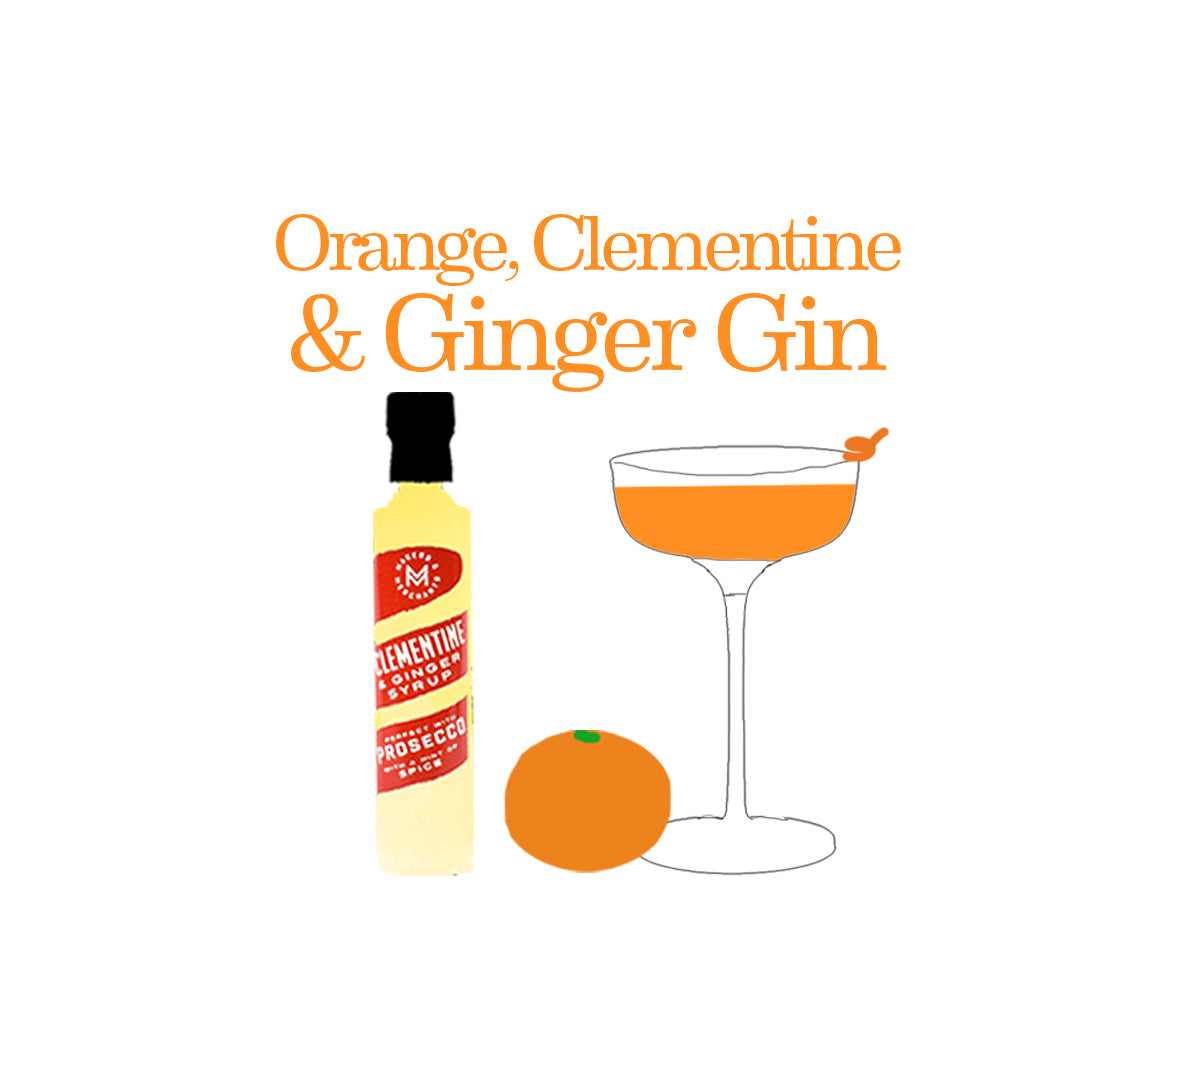 Orange, Clementine & Ginger Gin